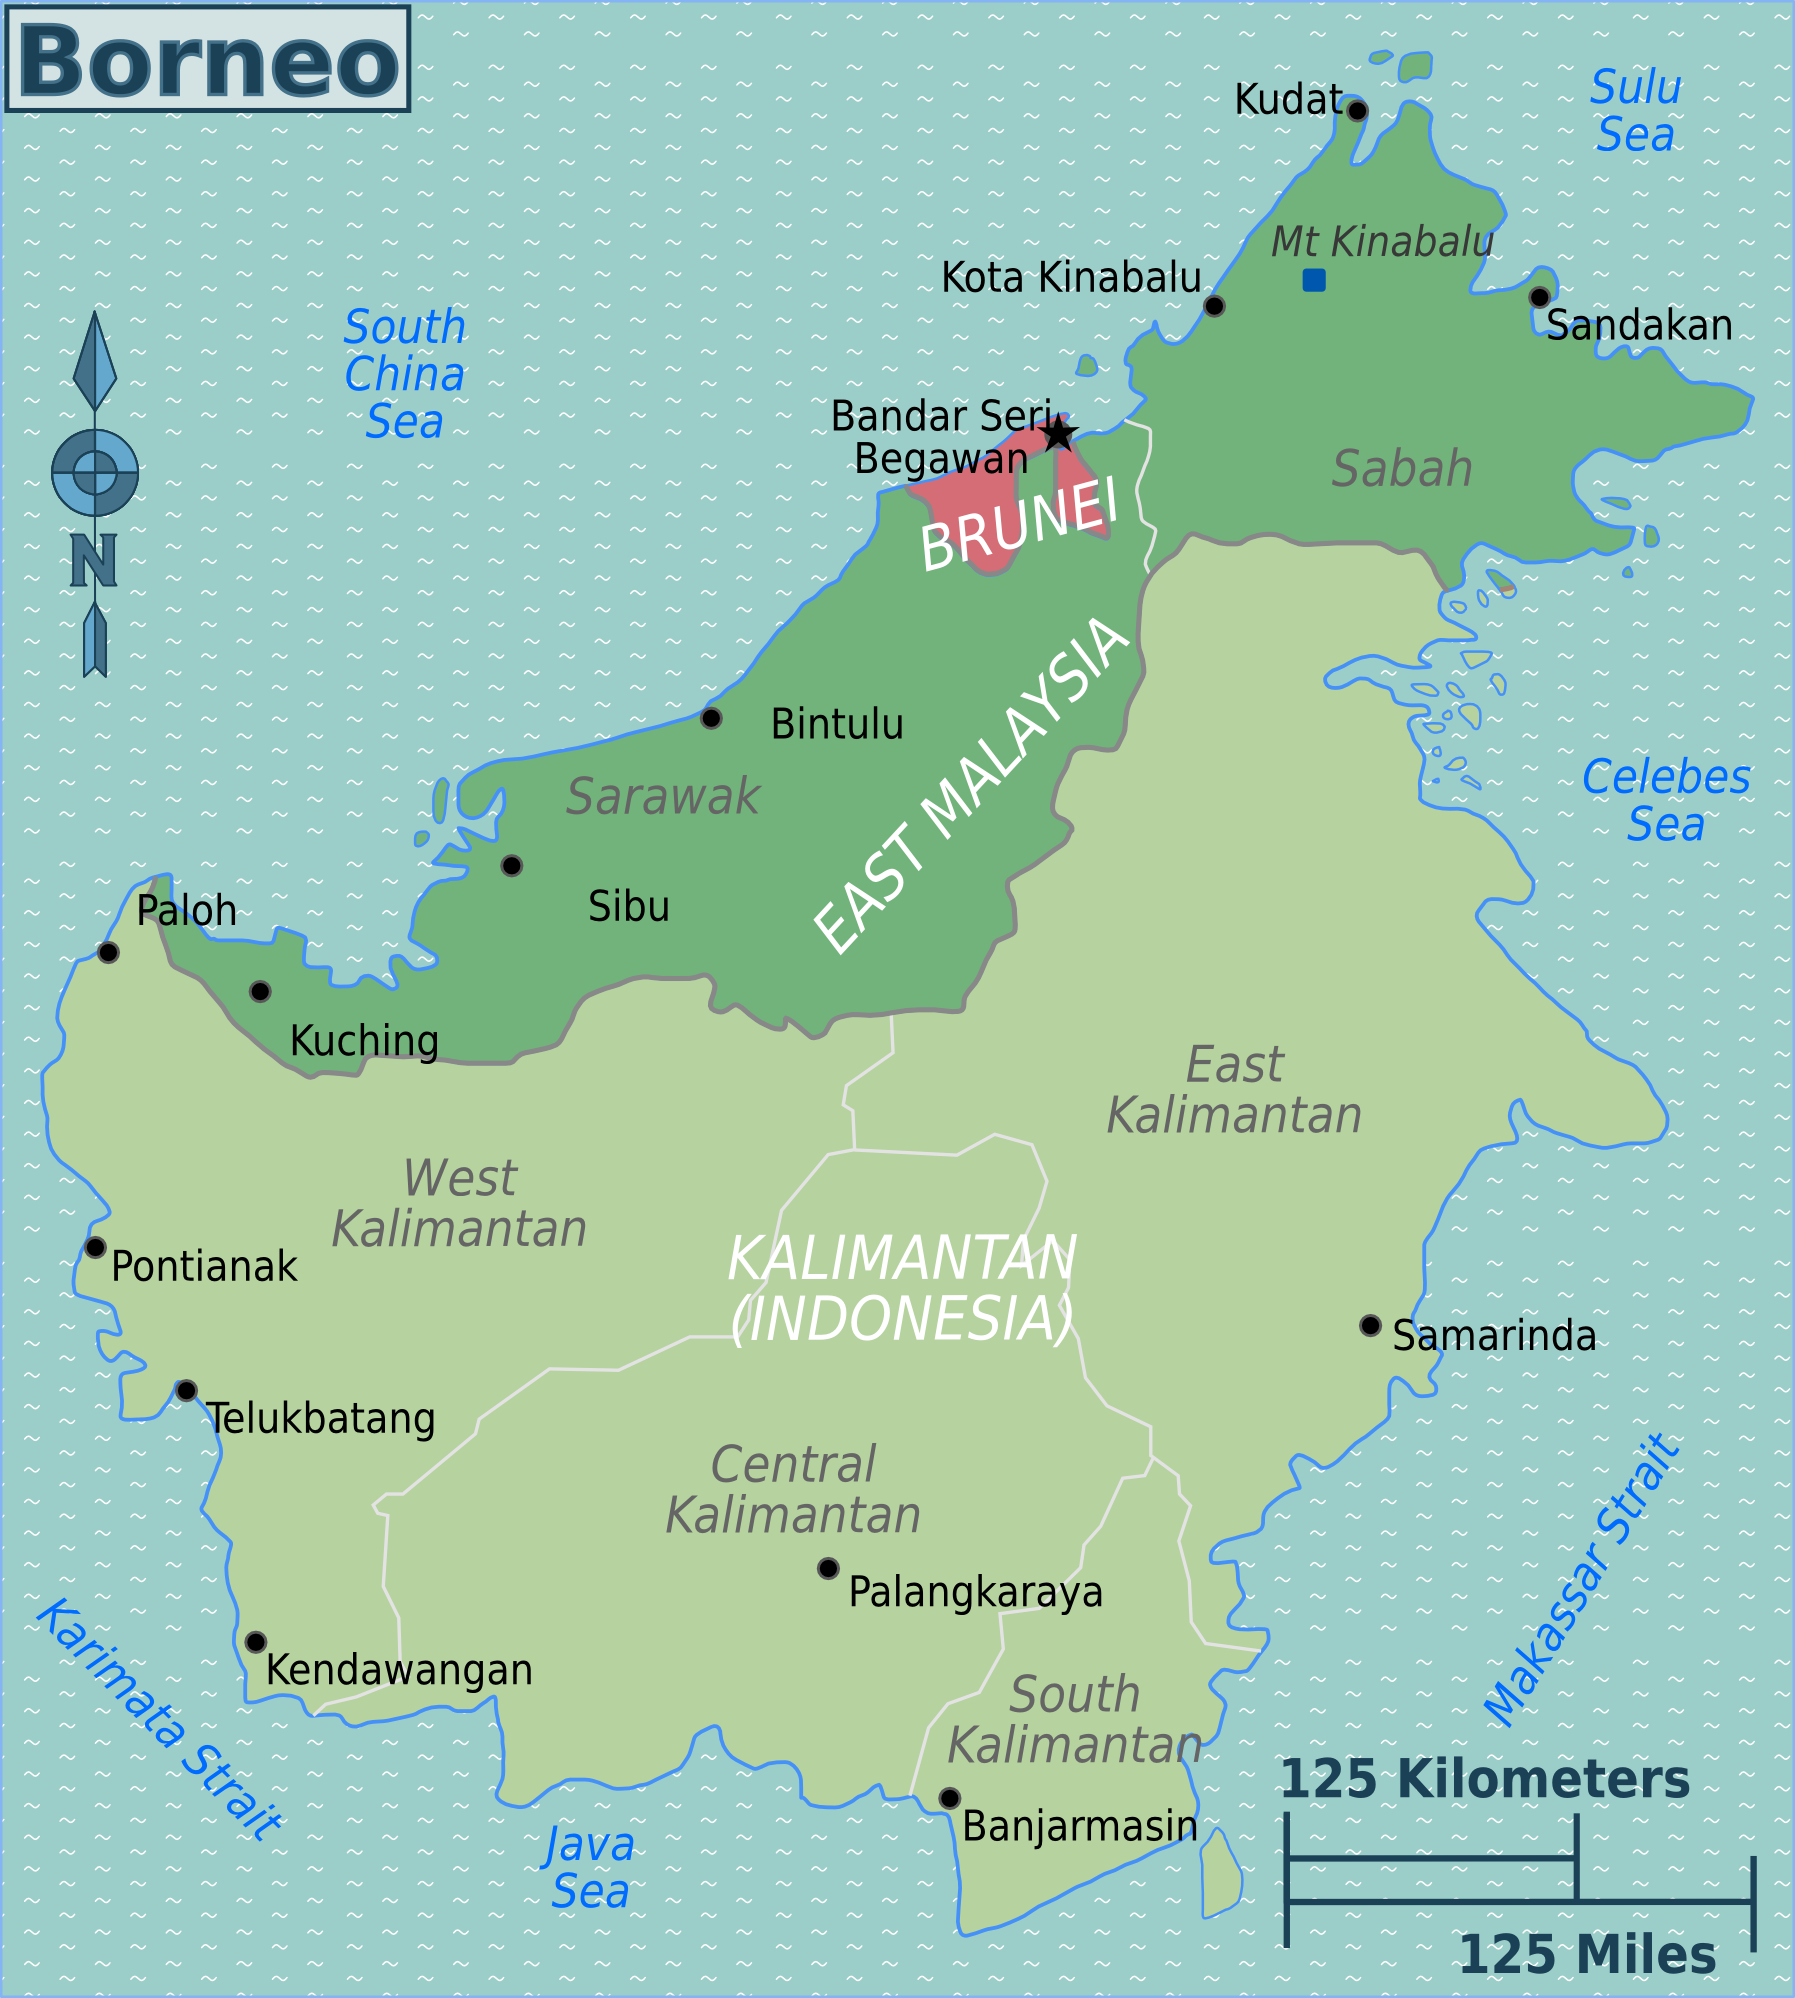 Kota Kinabalu, Sabah, Malaysia (Borneo)